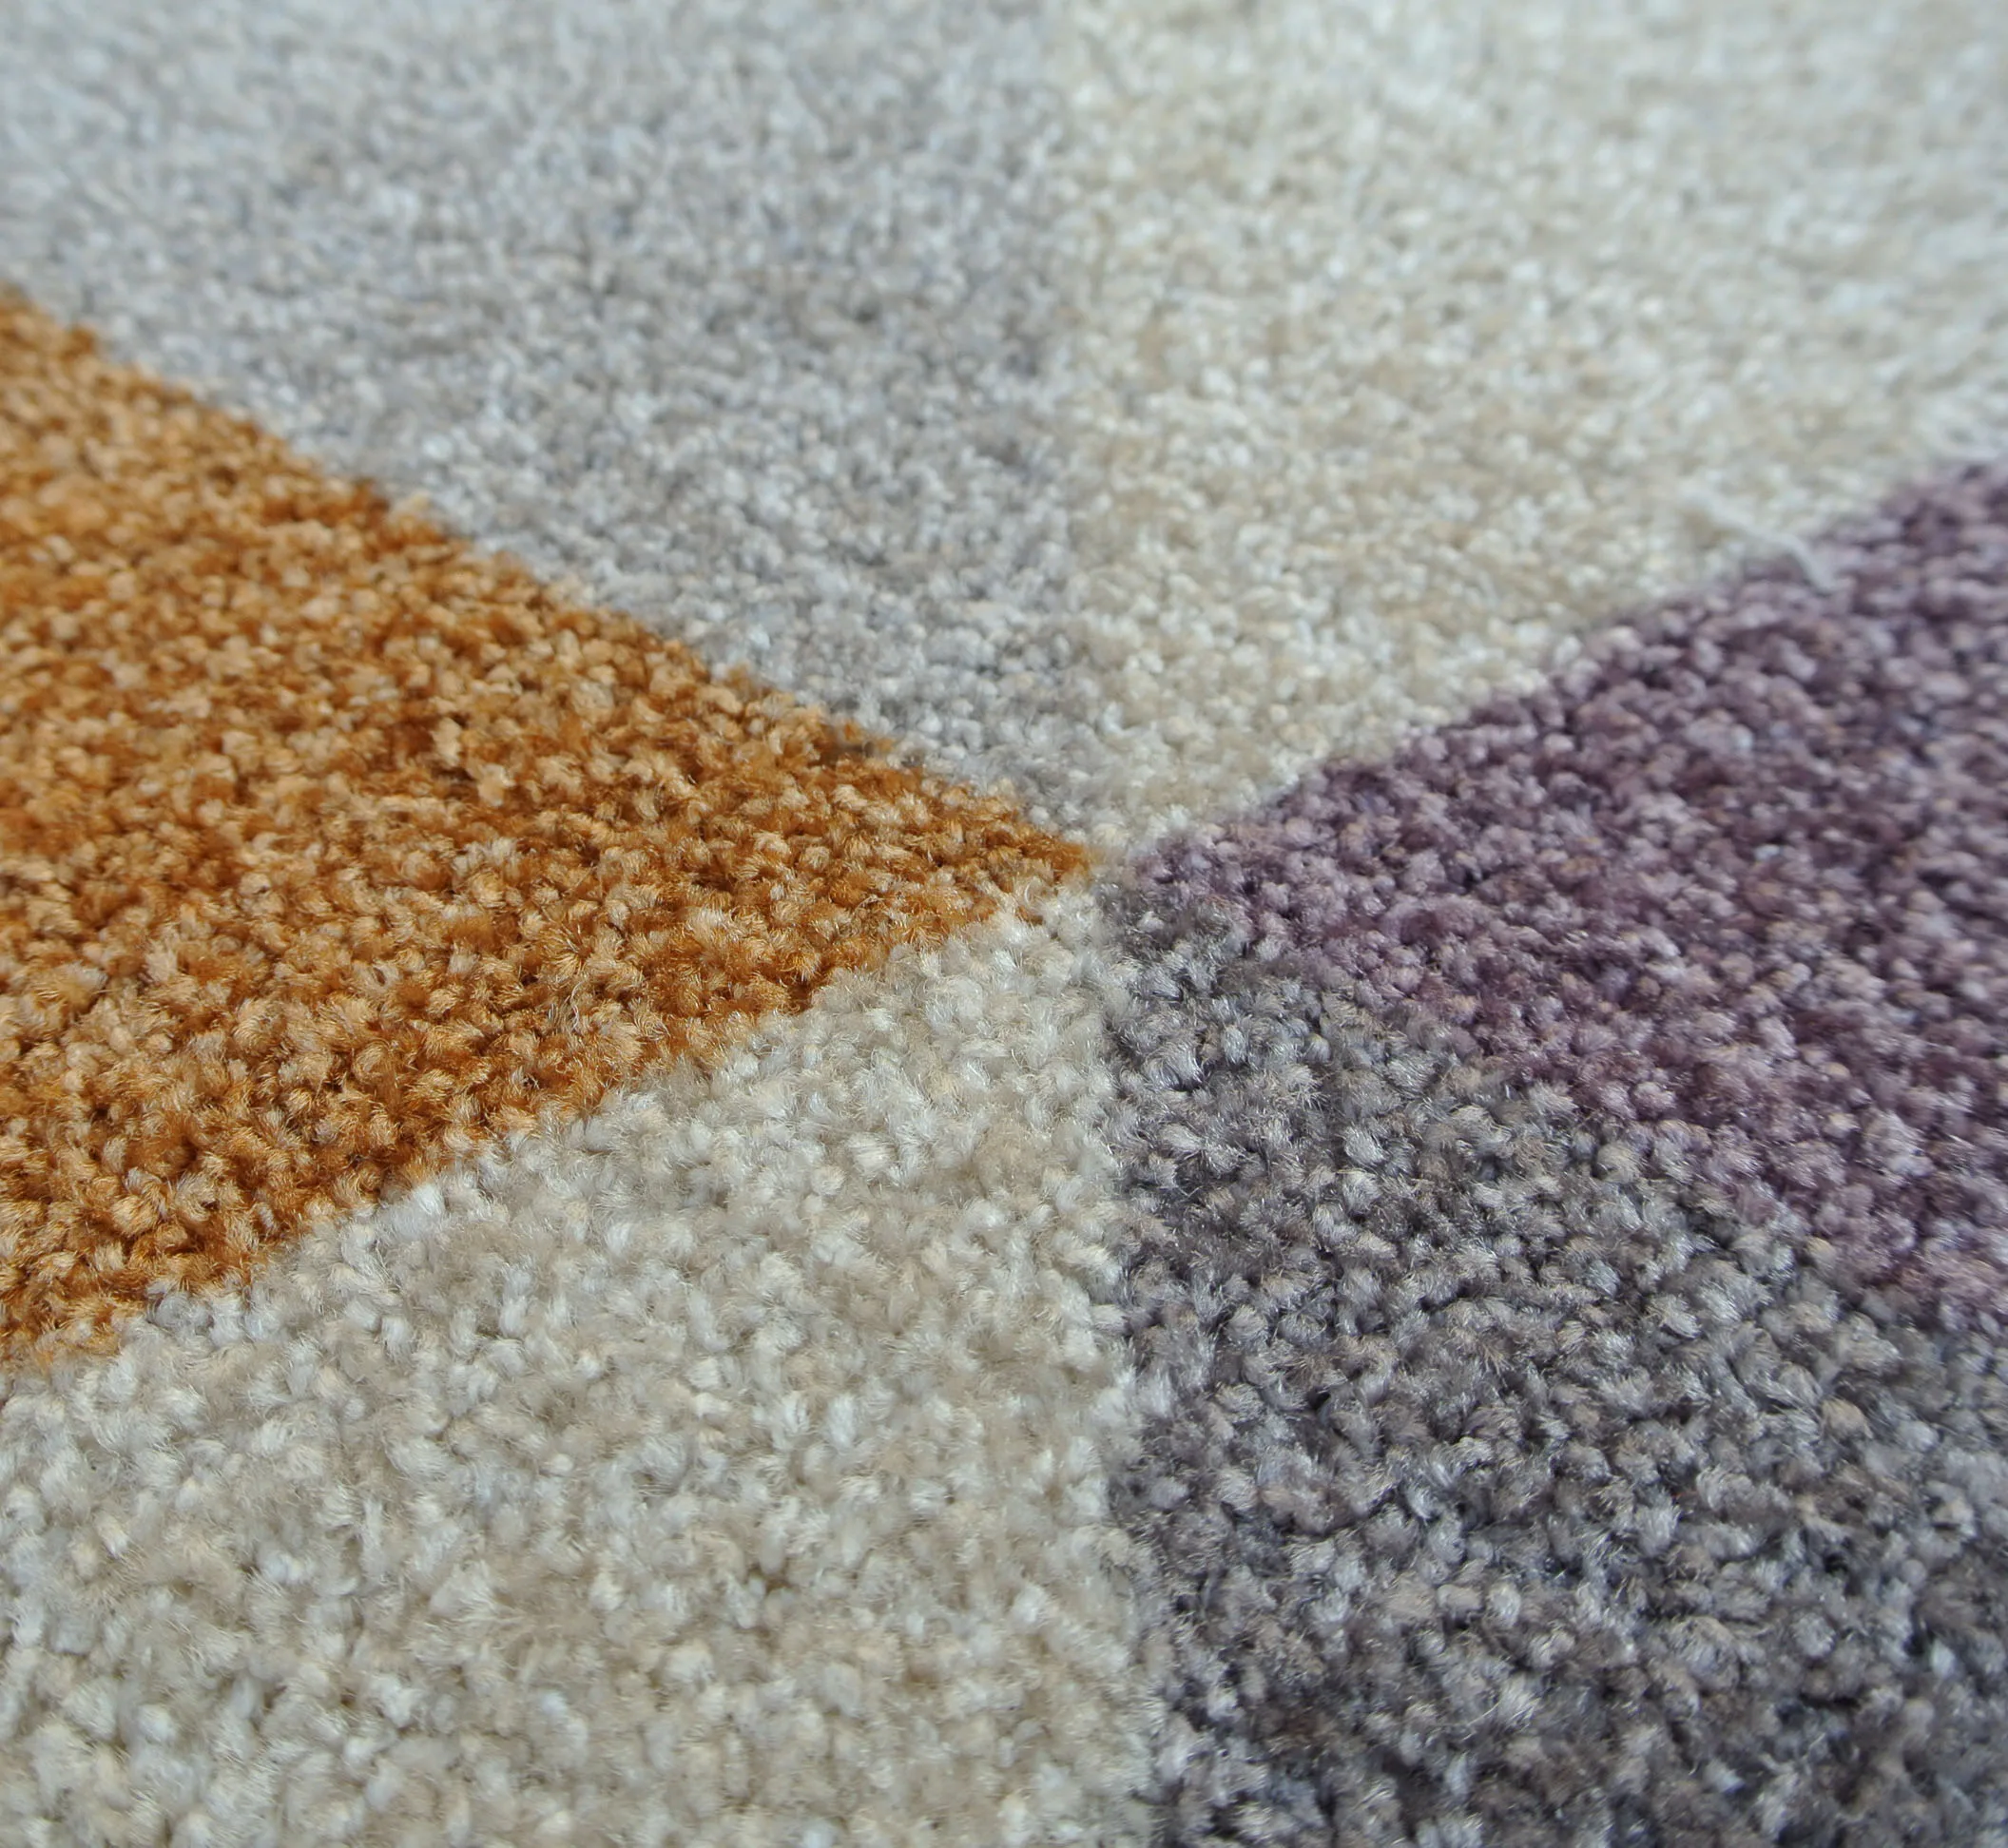 buy 高品质涤纶地毯,尼龙地毯废料,便宜的价格环绒地毯 product on